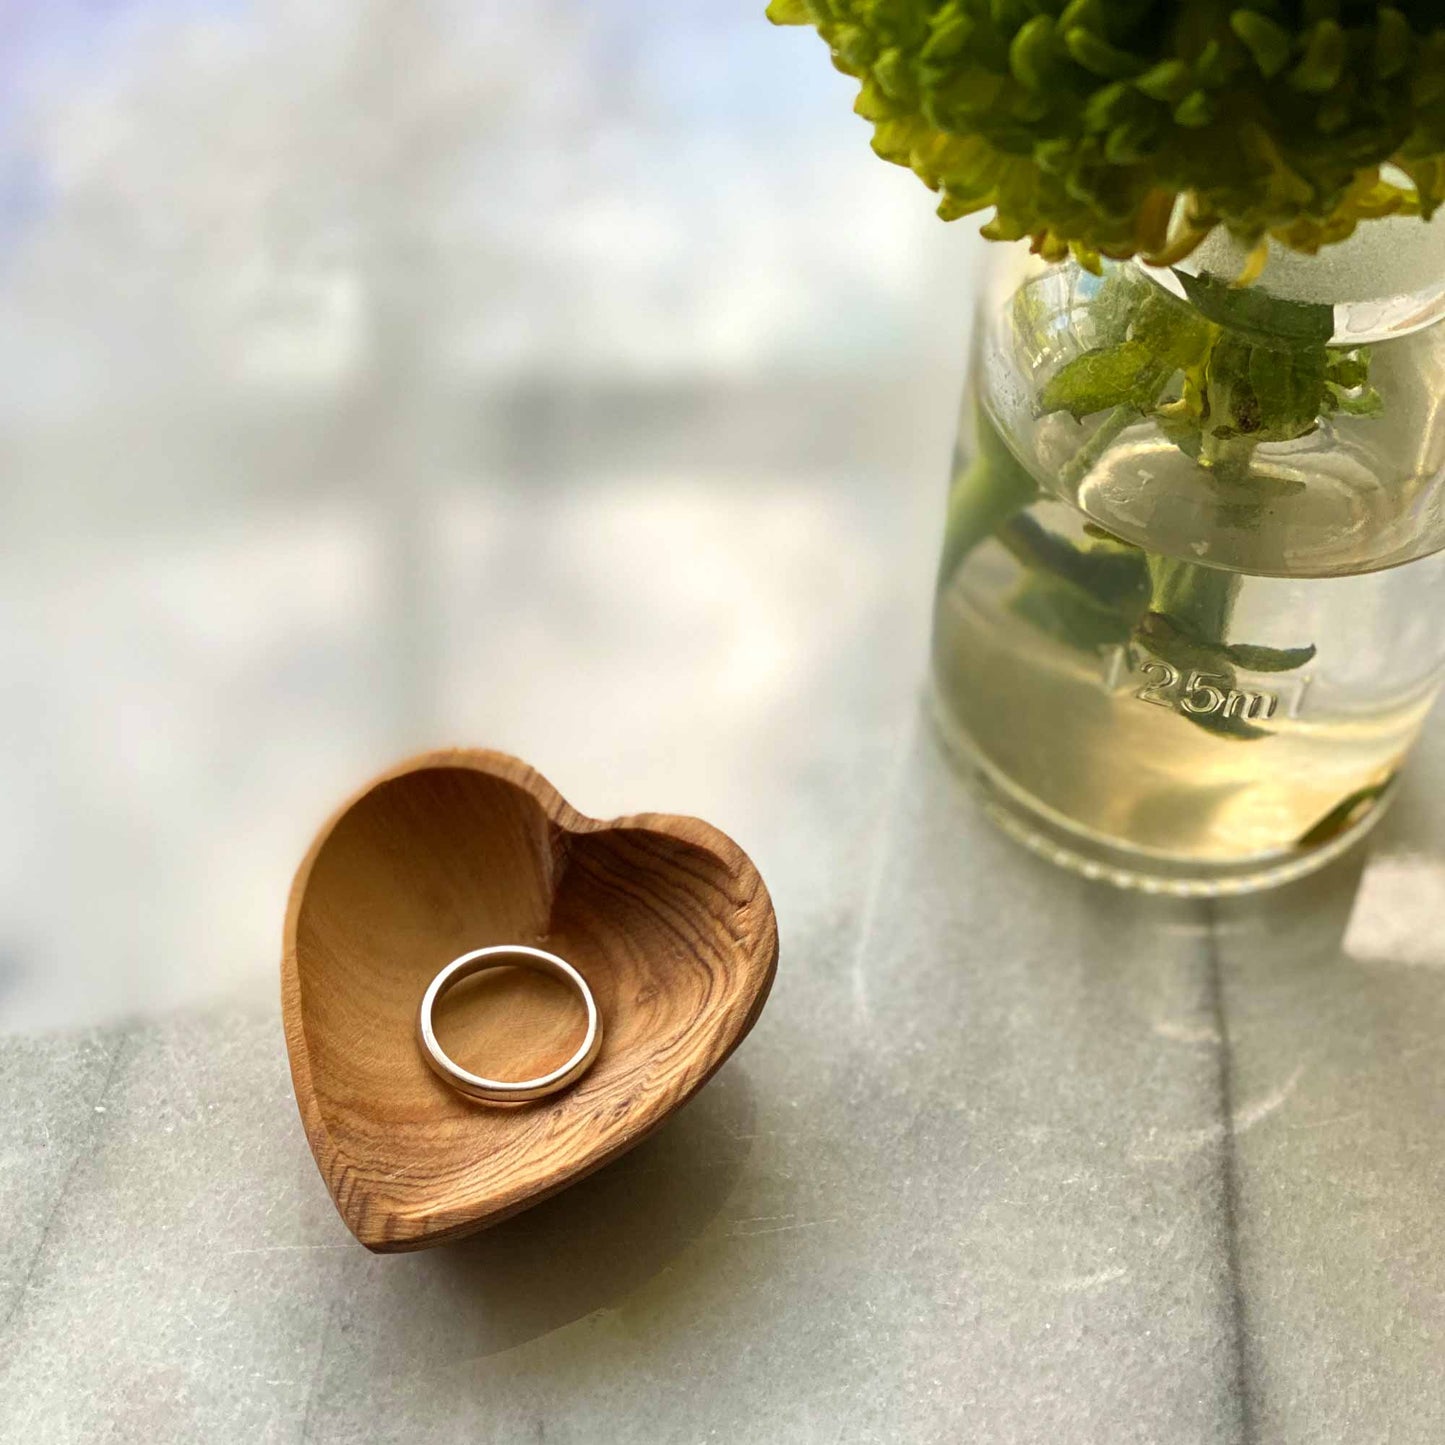 Cuencos pequeños con forma de corazón de madera de olivo - Juego de 2